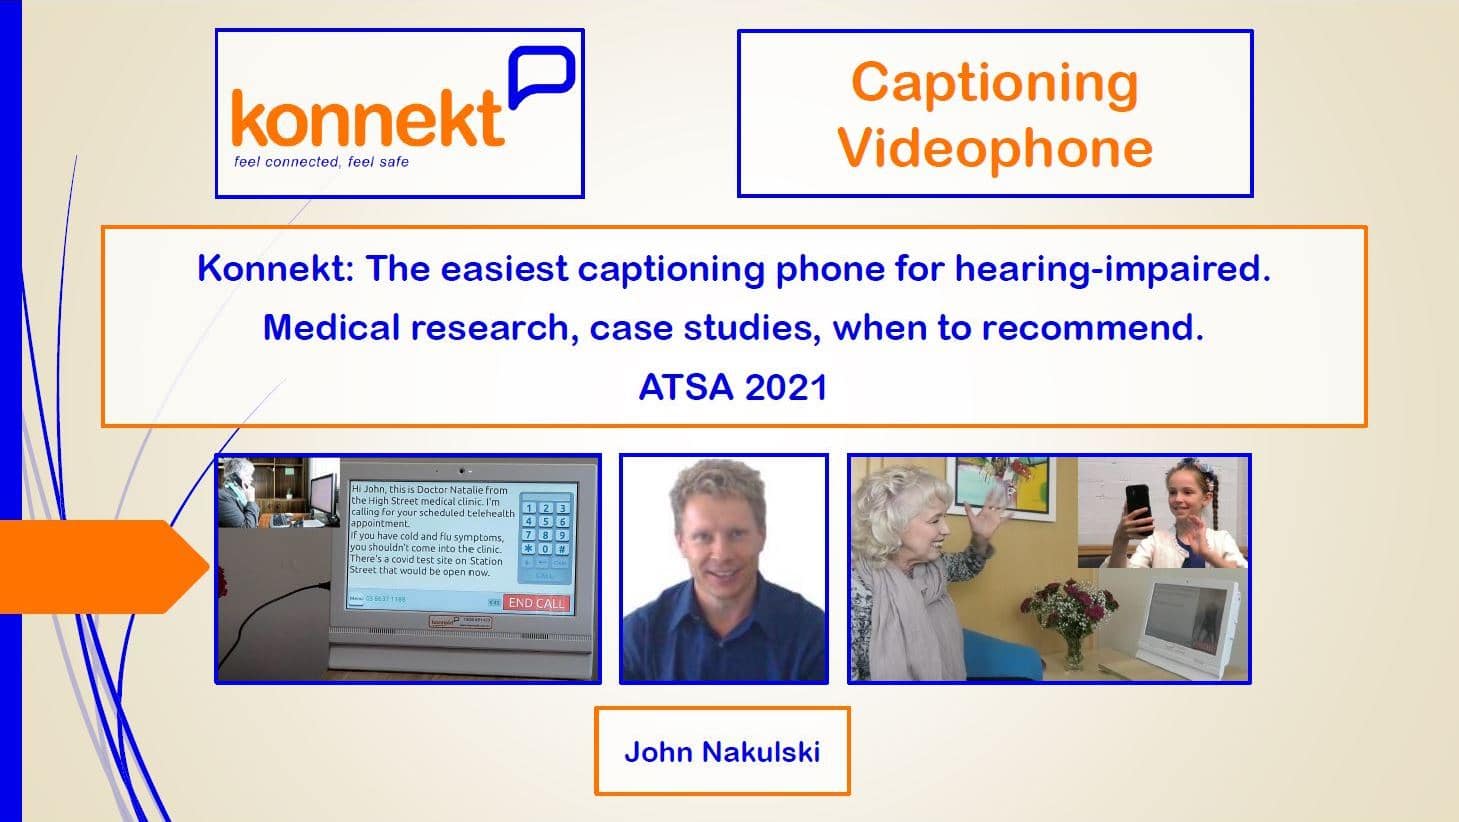 Presentazione del seminario ATSA 2021 di Konnekt